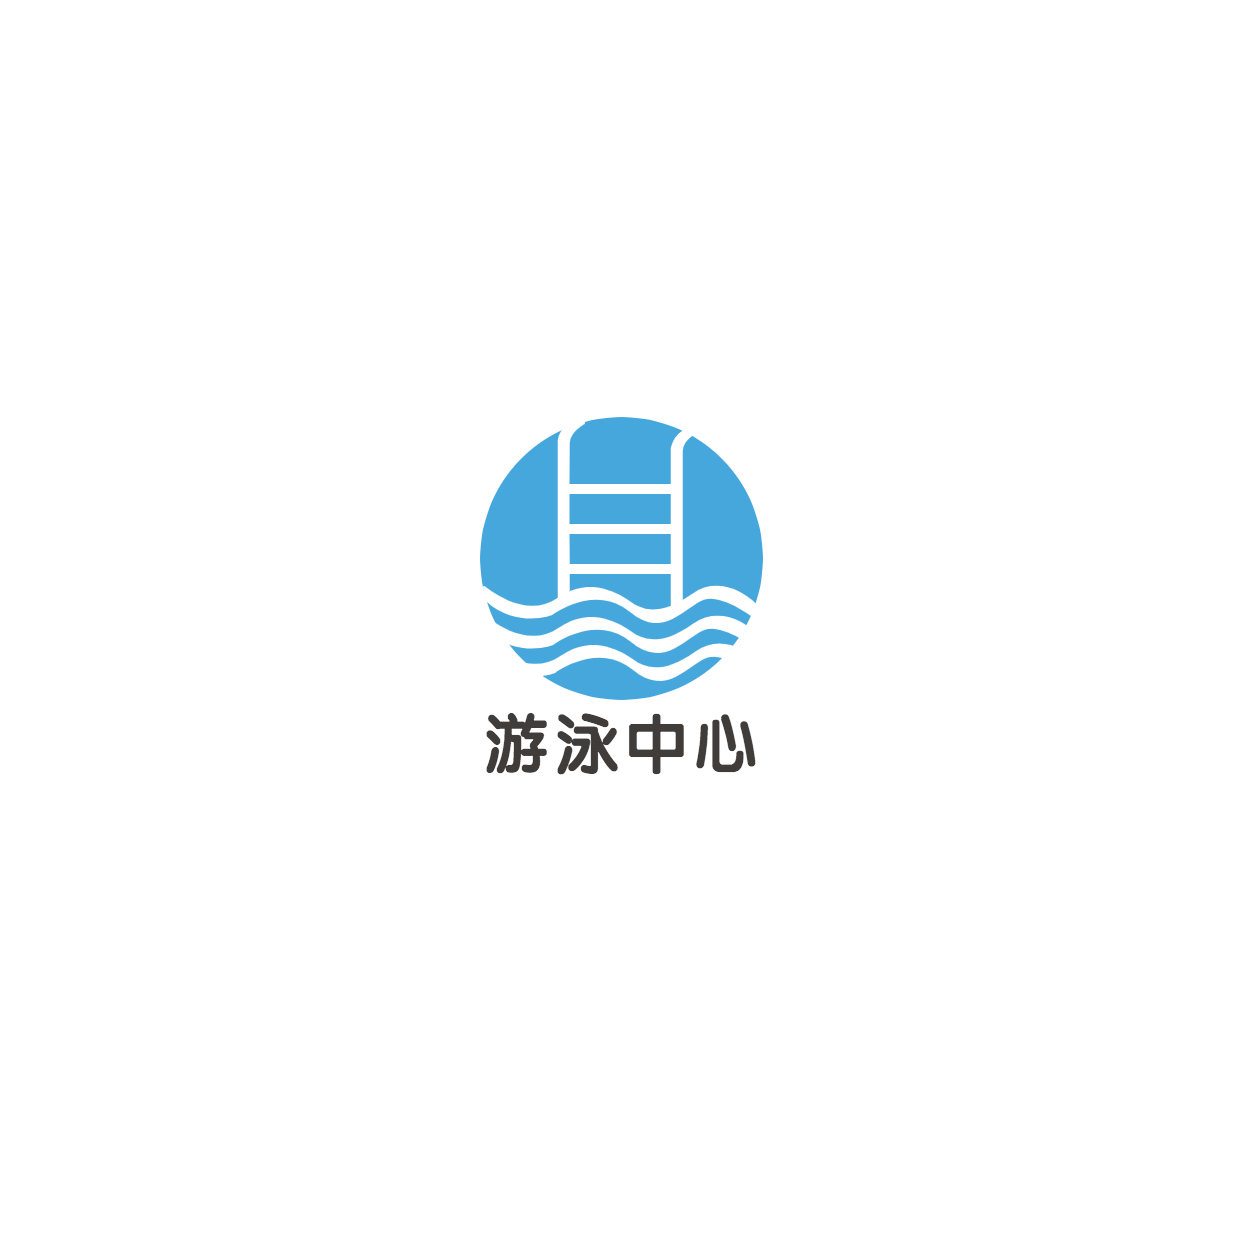 游泳中心培训手绘头像logo